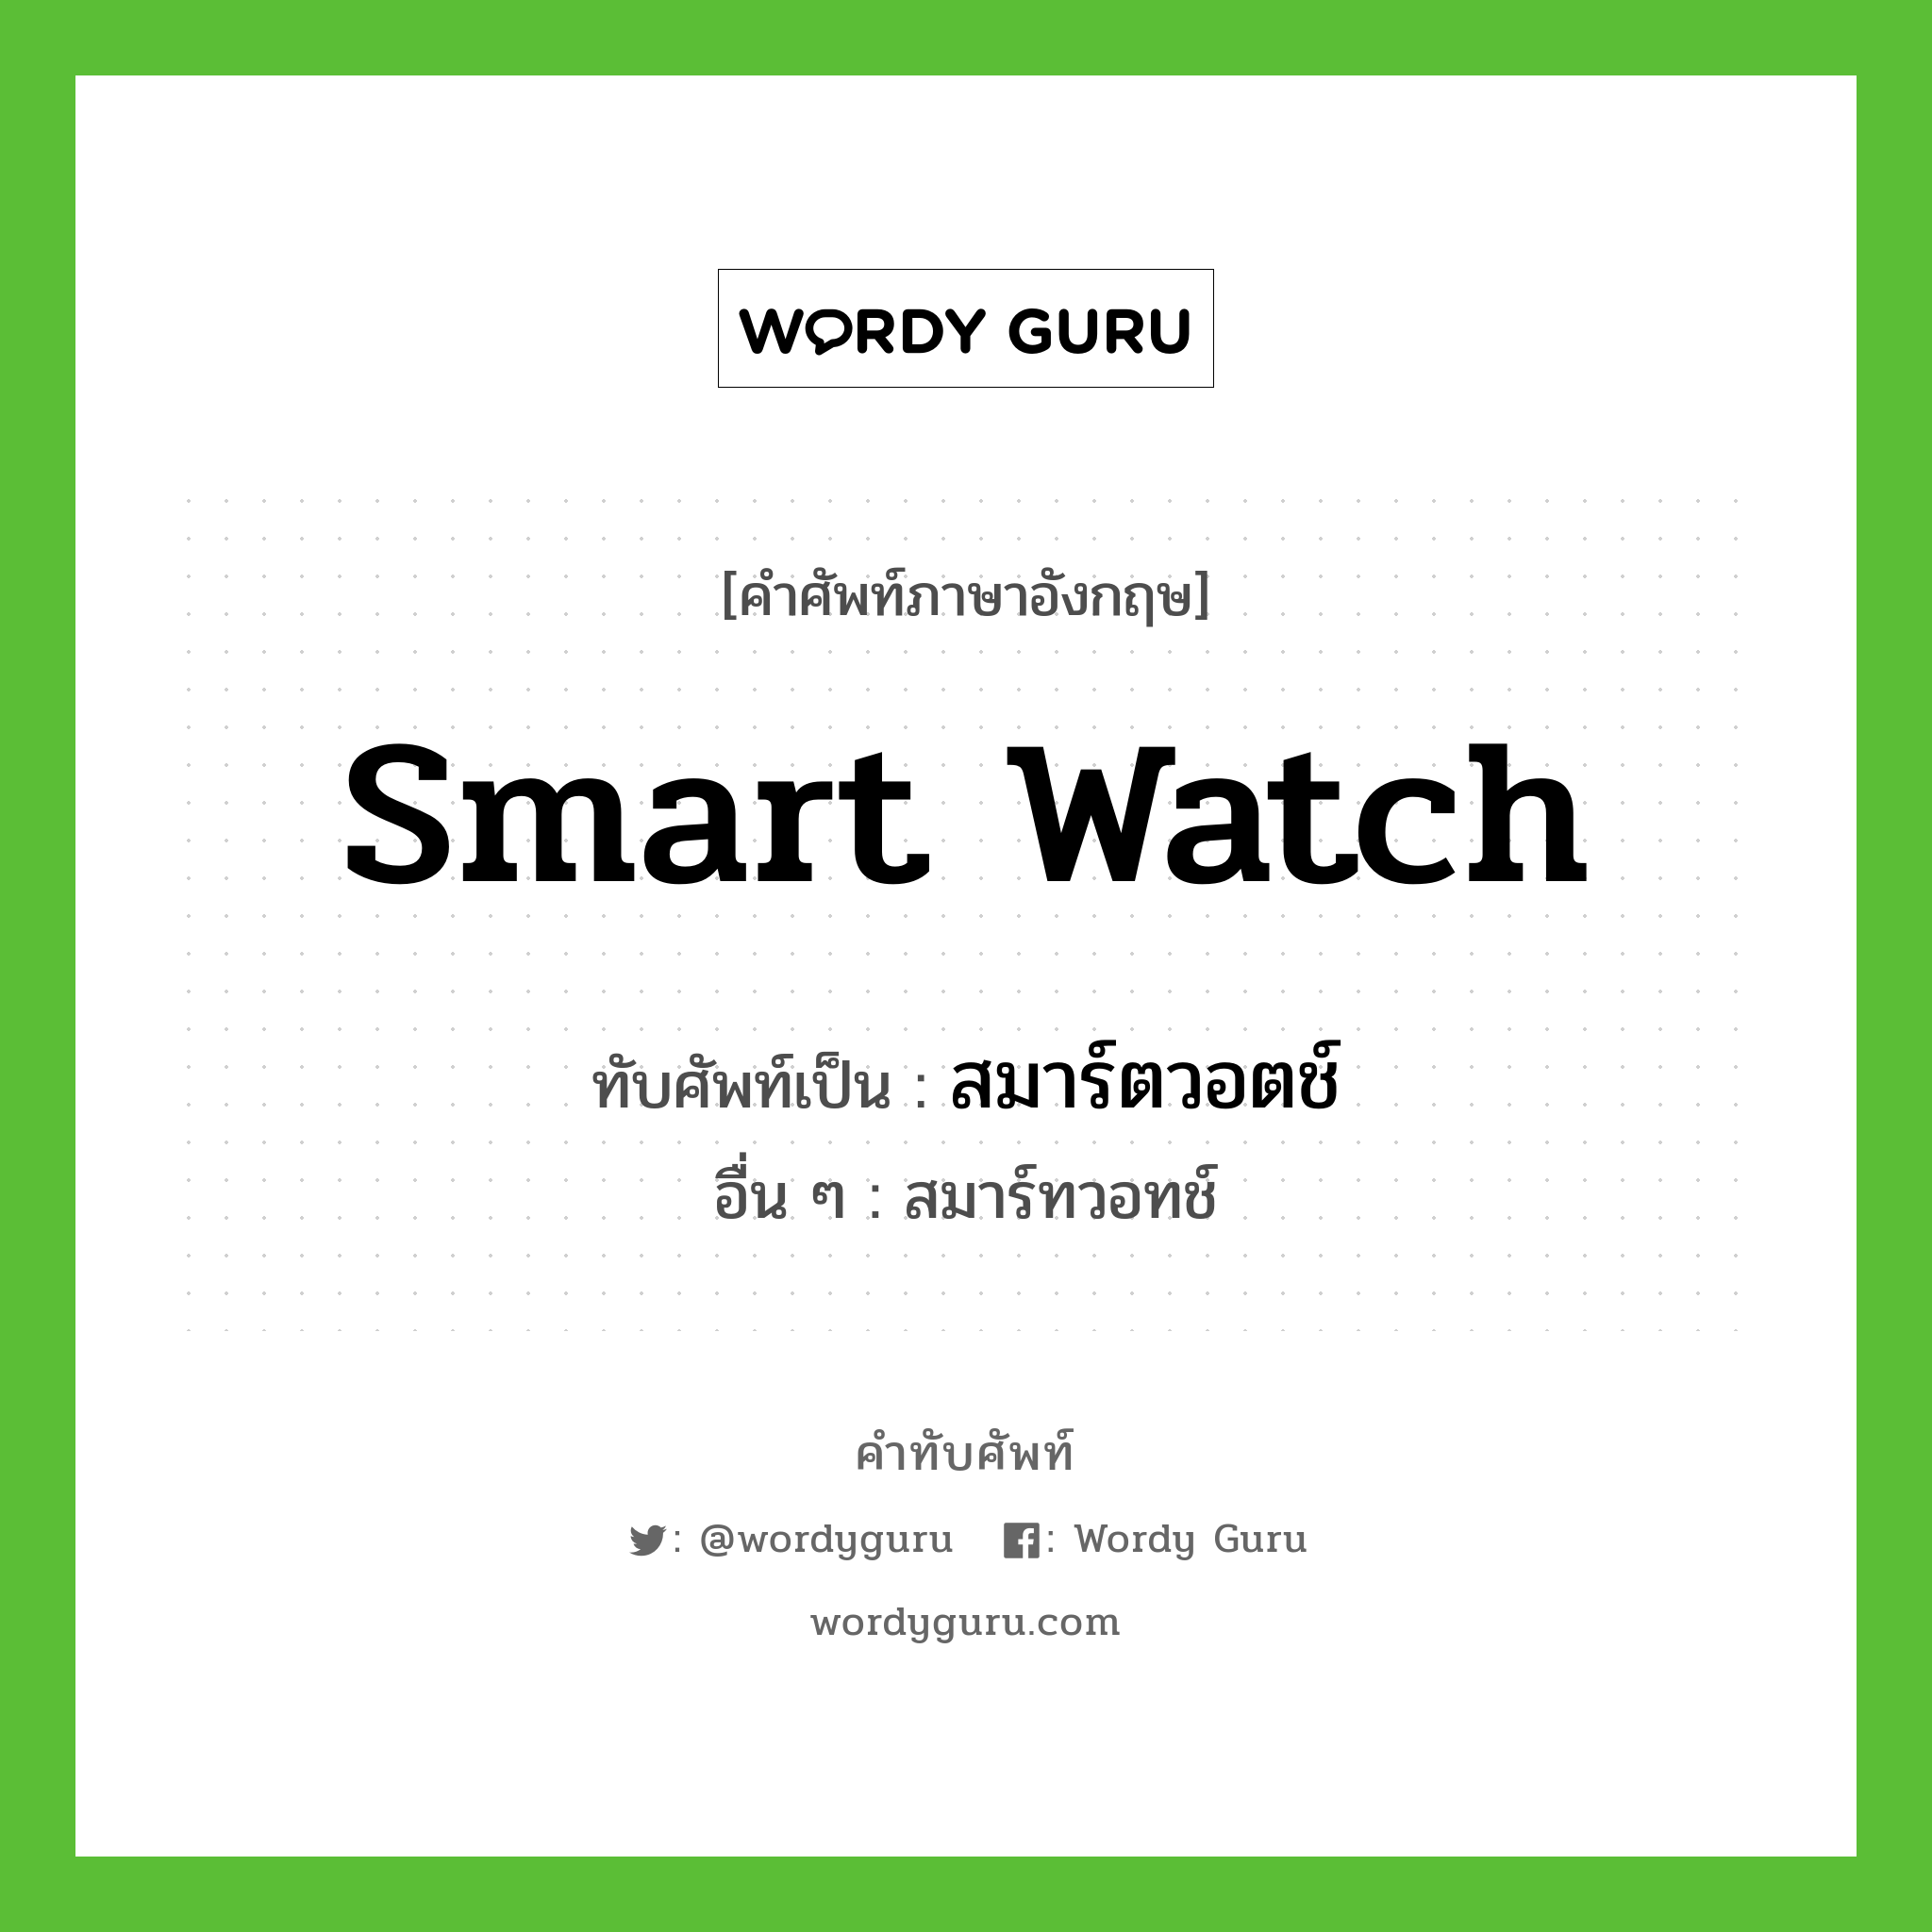 สมาร์ตวอตช์ เขียนอย่างไร?, คำศัพท์ภาษาอังกฤษ สมาร์ตวอตช์ ทับศัพท์เป็น Smart watch อื่น ๆ สมาร์ทวอทช์